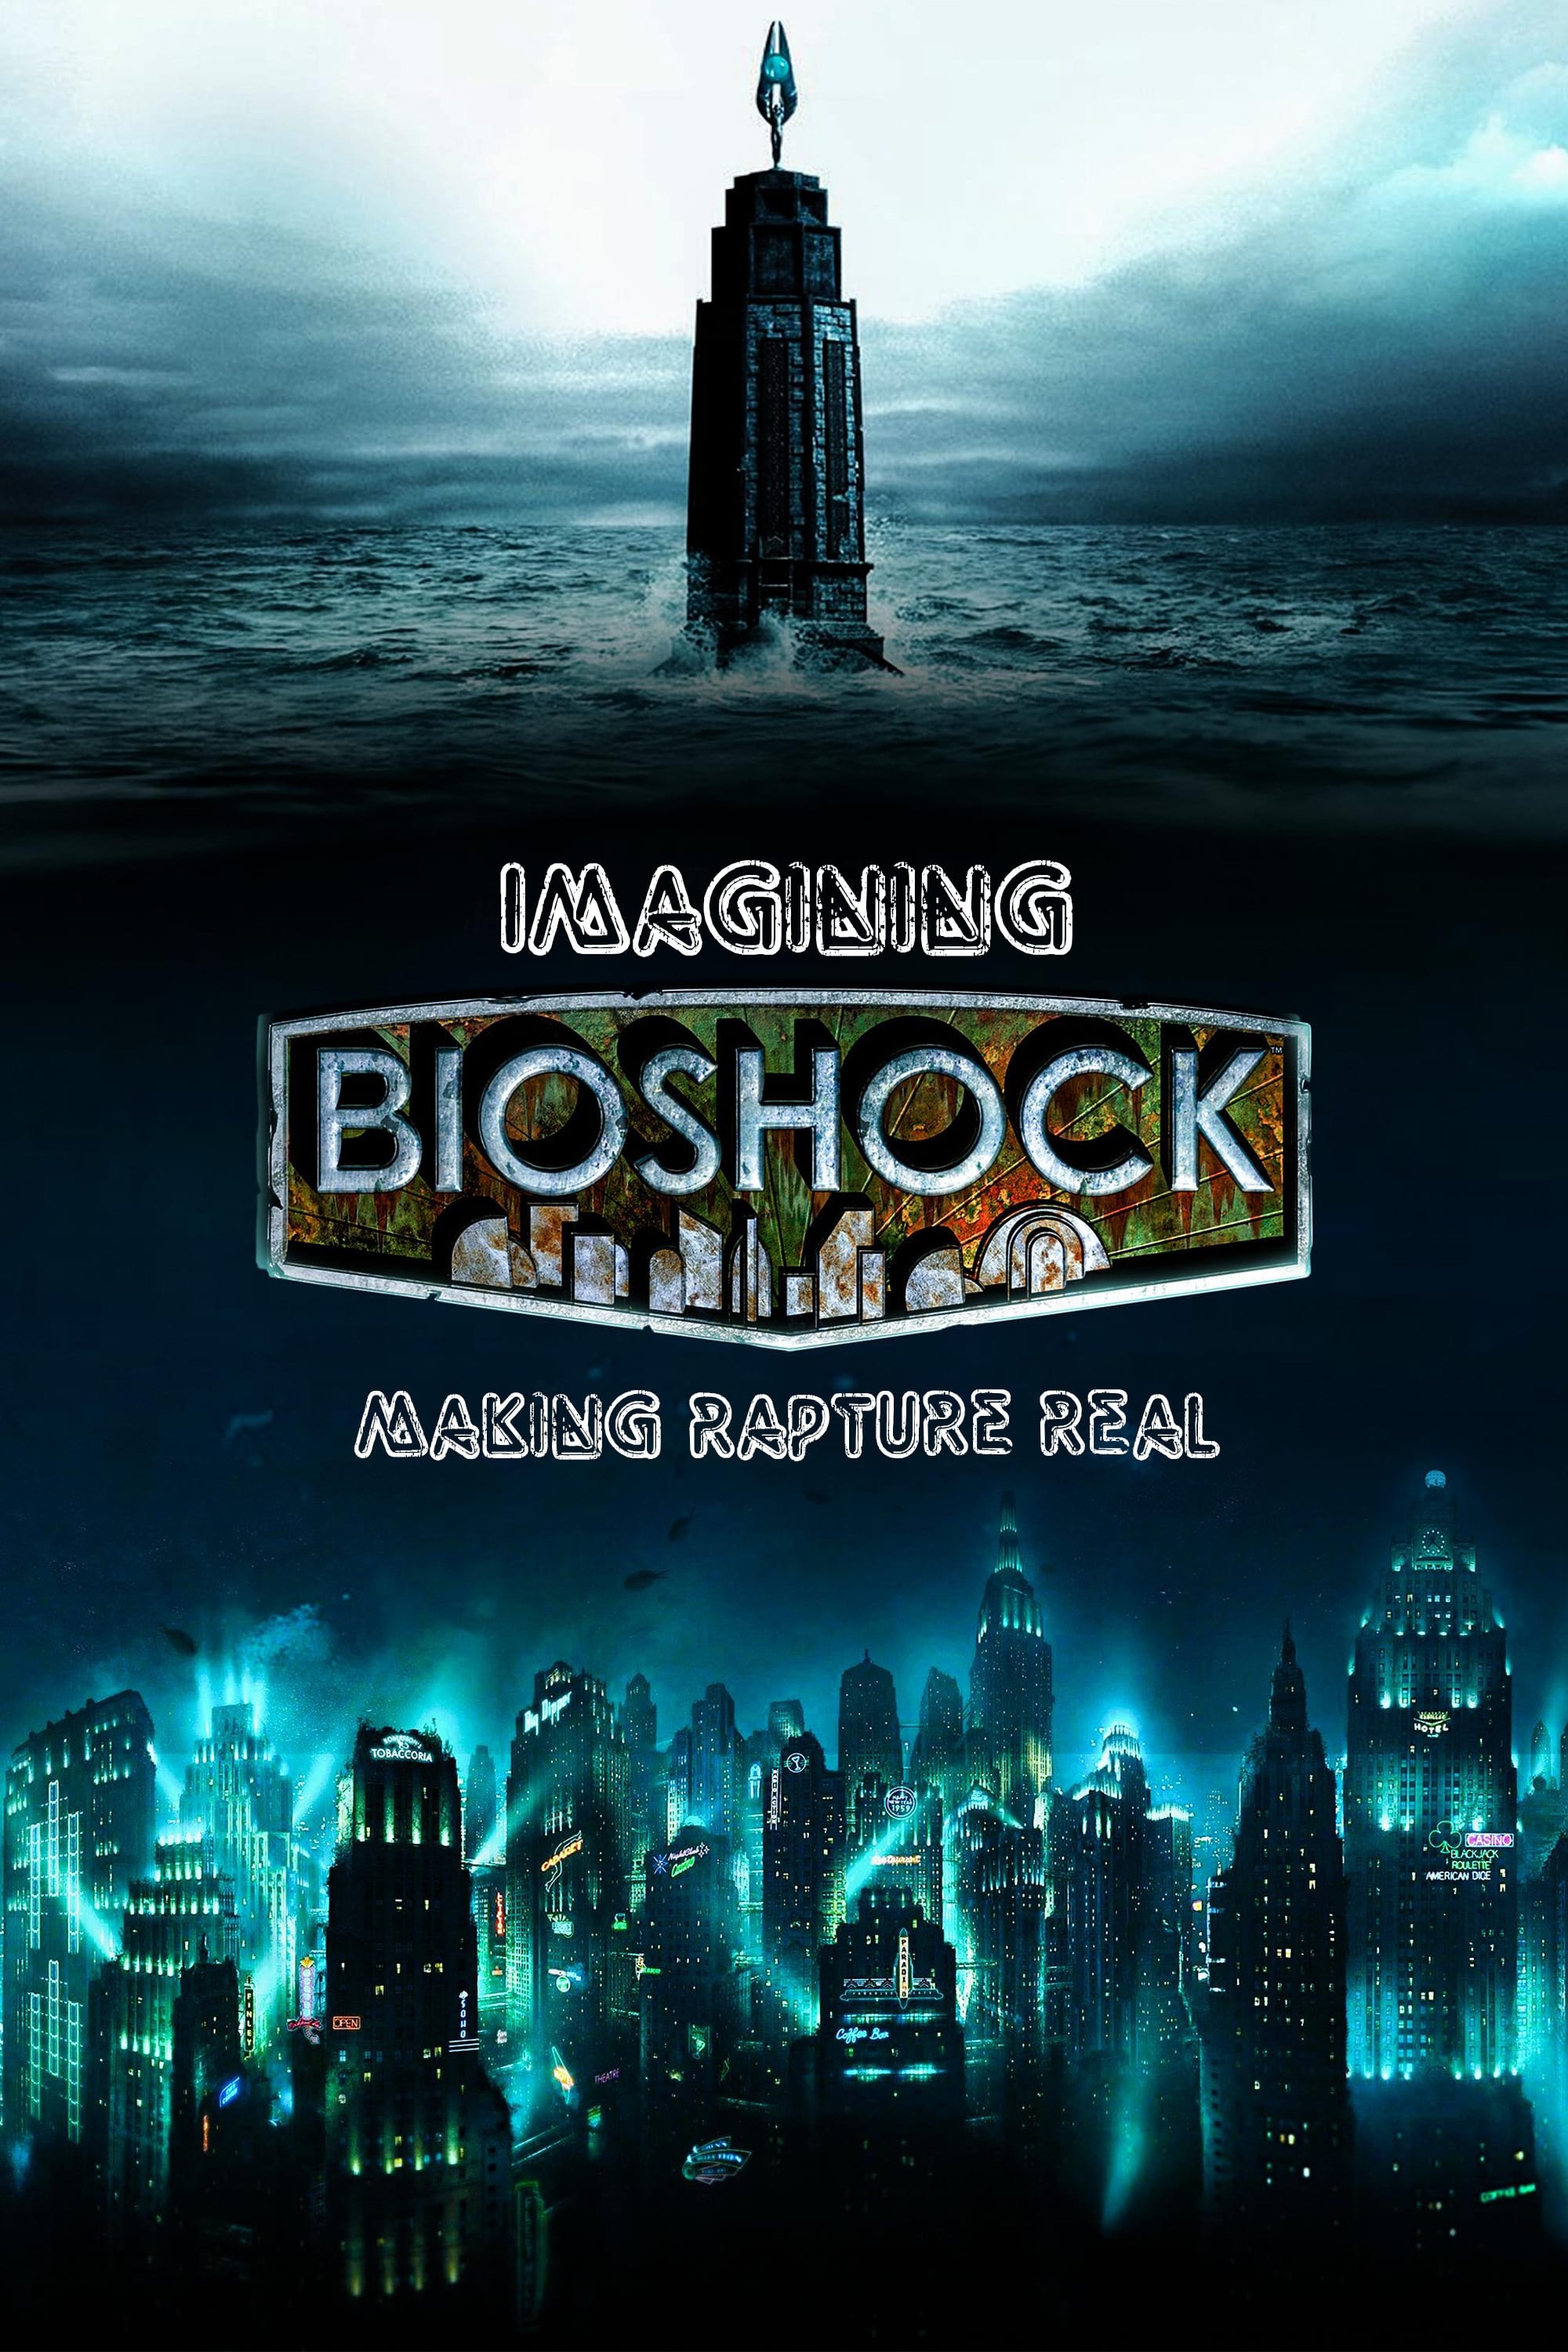 Imagining Bioshock: Making Rapture Real